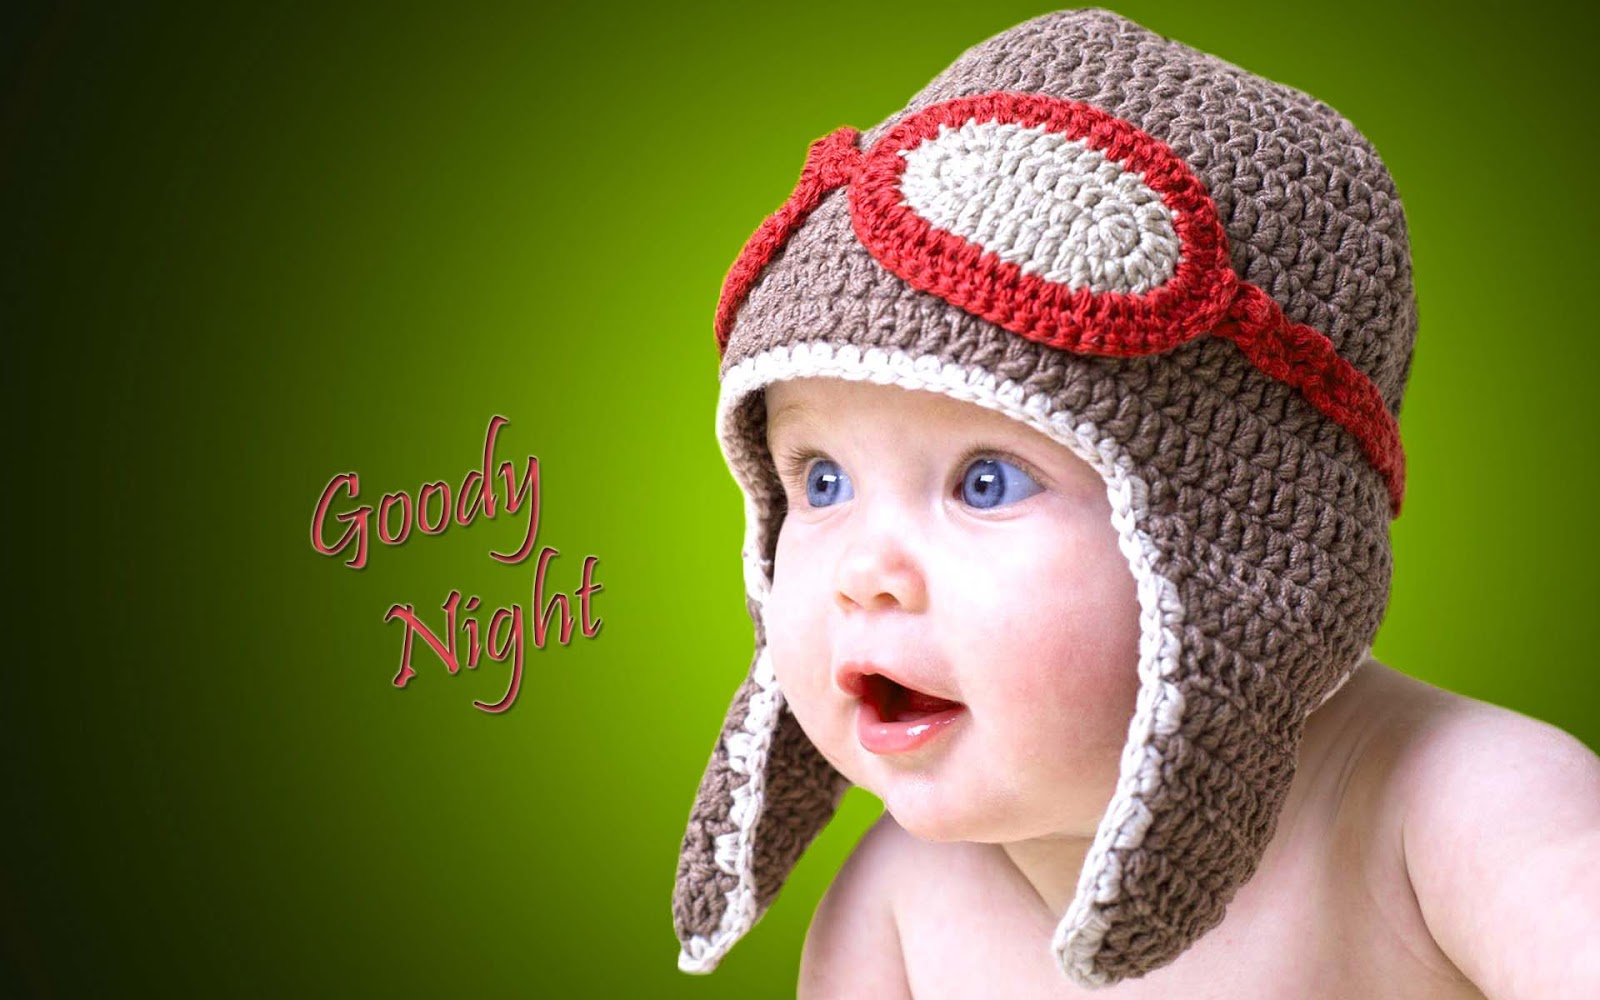 sfondi carini buona notte,bambino,berretto a maglia,beanie,capi di abbigliamento,uncinetto